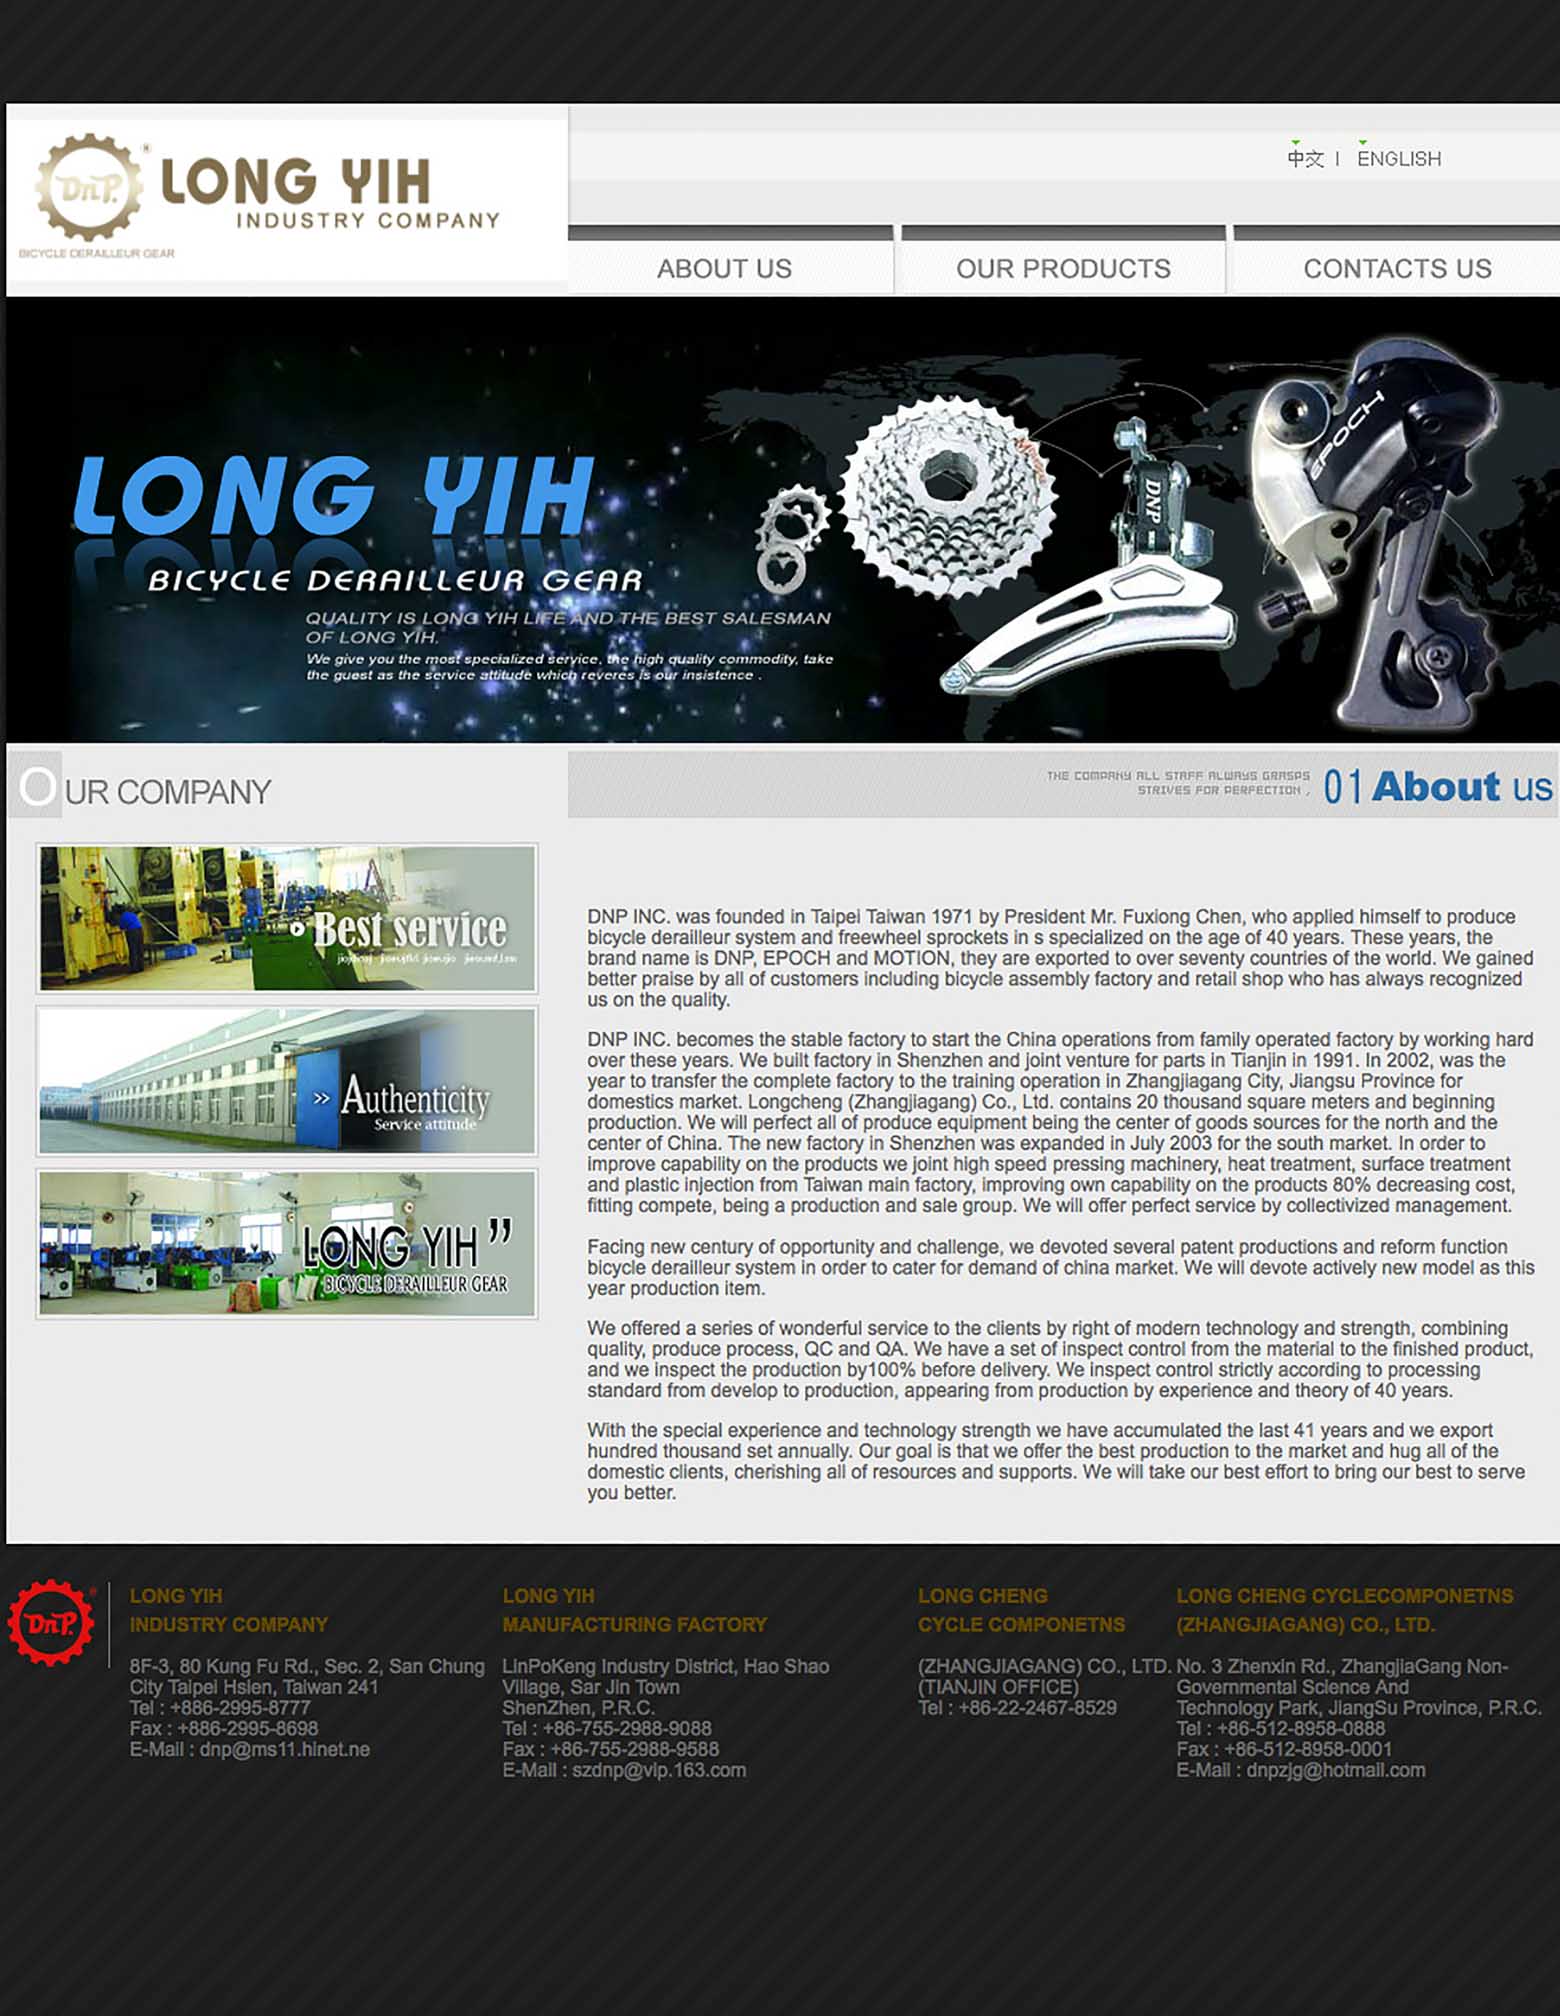 DNP - web site 2010? image 1 main image